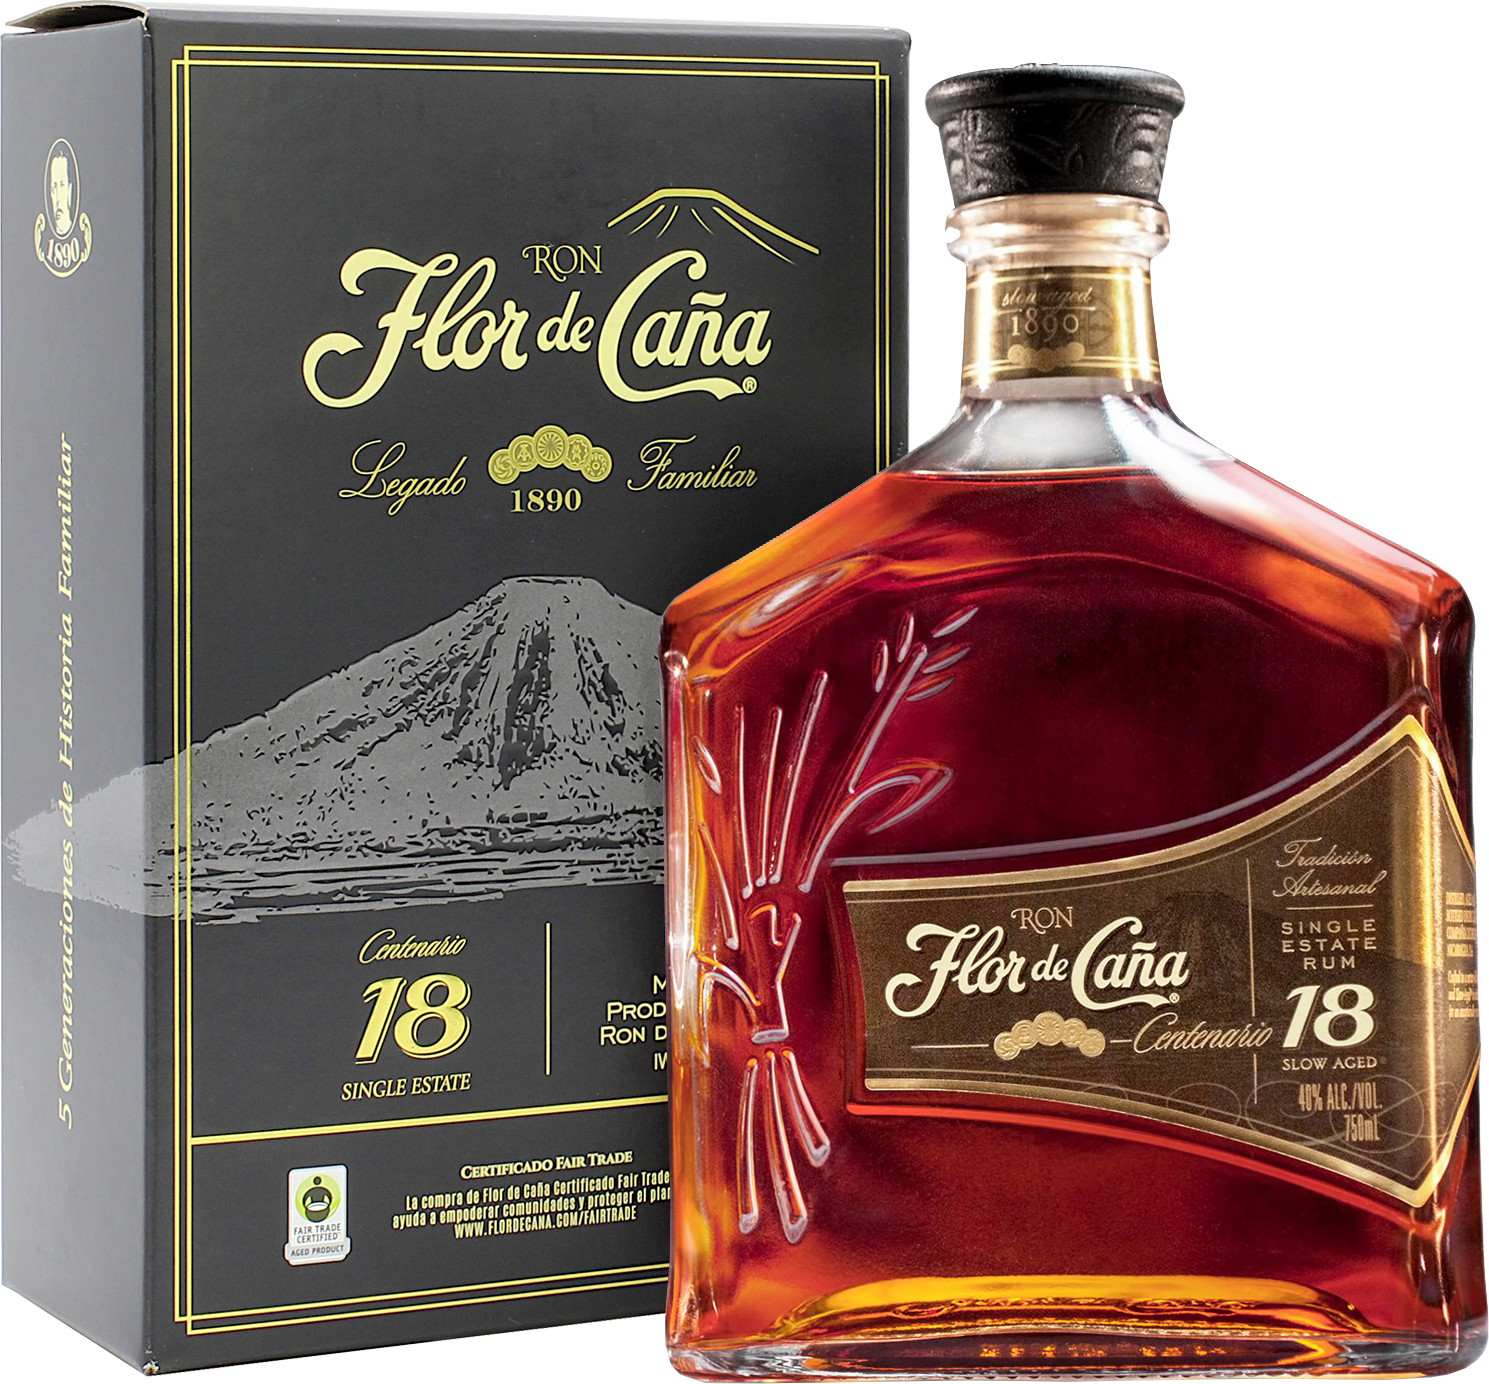 Köstlichalkoholisches - Flor de Caña Rum Centenario Gold 18 - Onlineshop Ludwig von Kapff